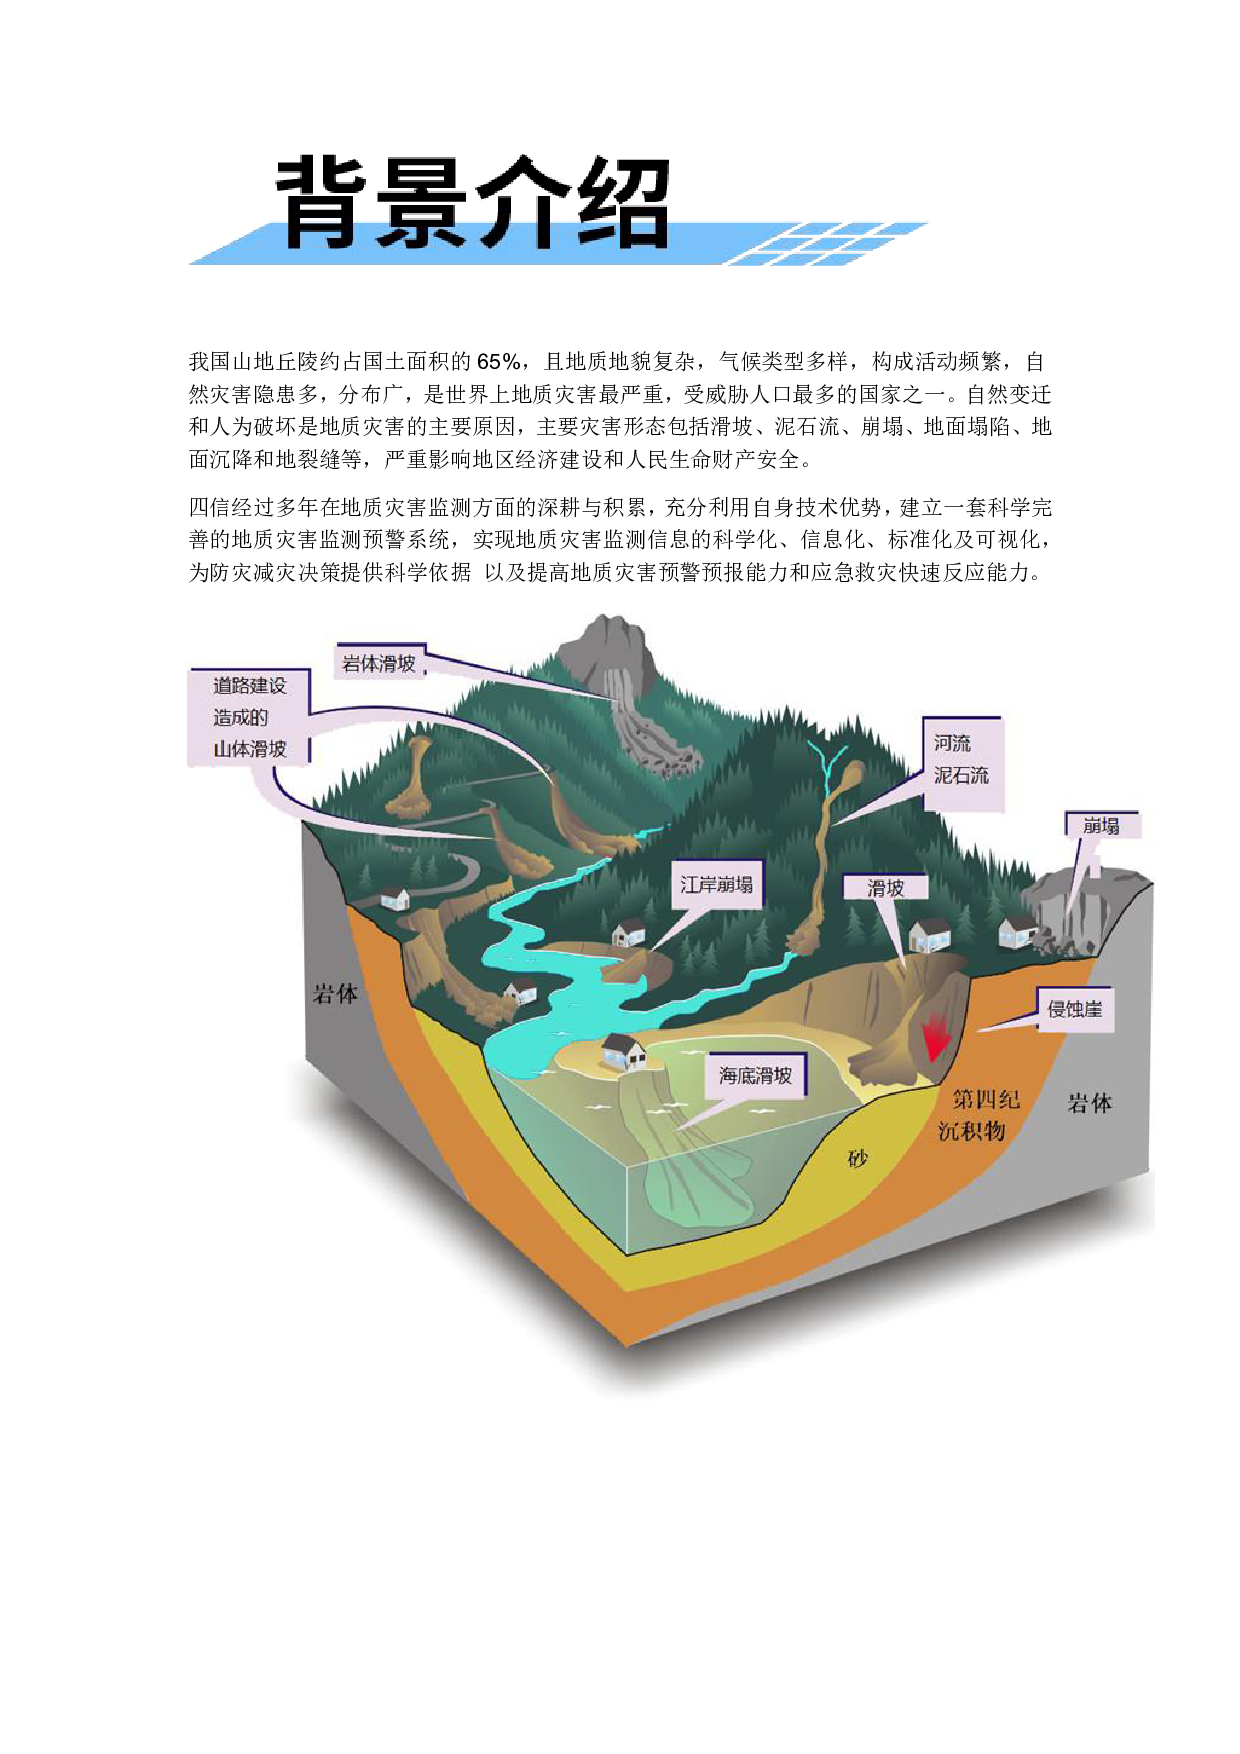 地质灾害监测预警系统图片